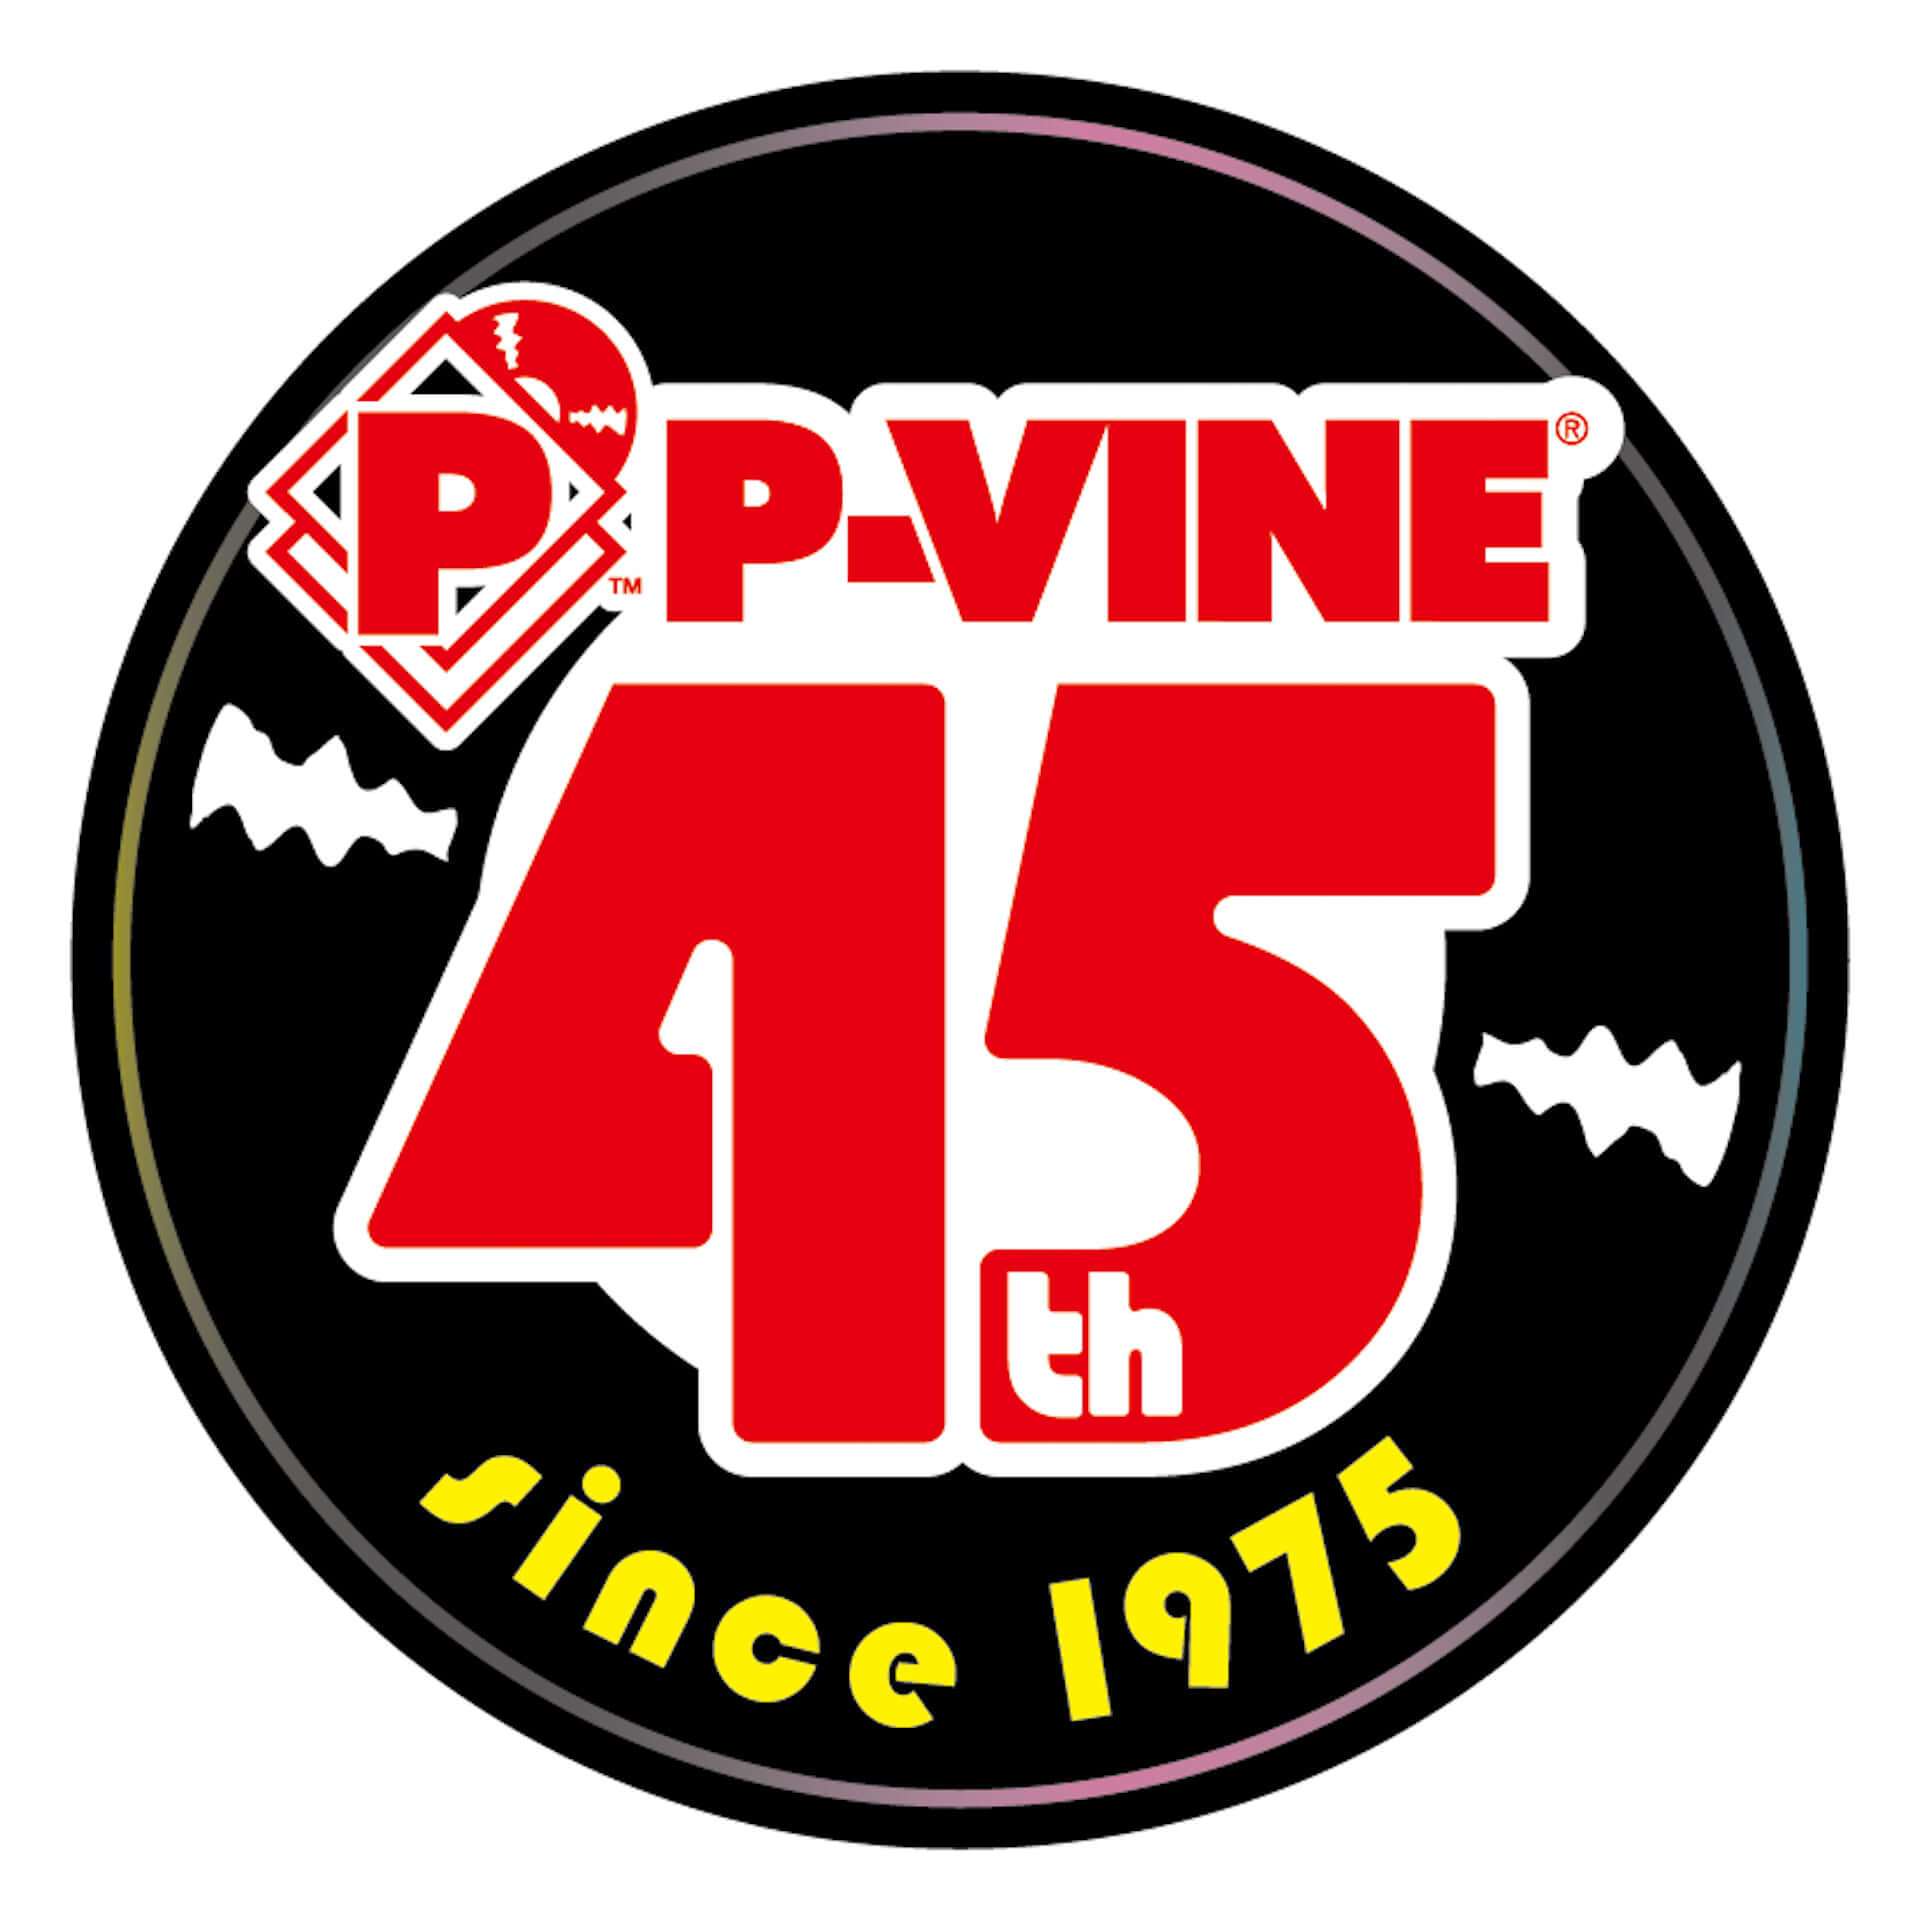 P-VINE設立45周年記念に特設HPがオープン！LIBRO、J.LAMOTTA すずめ、BURTON INC.の45回転レコードも発売決定 music201027_pvine_3-1920x1920